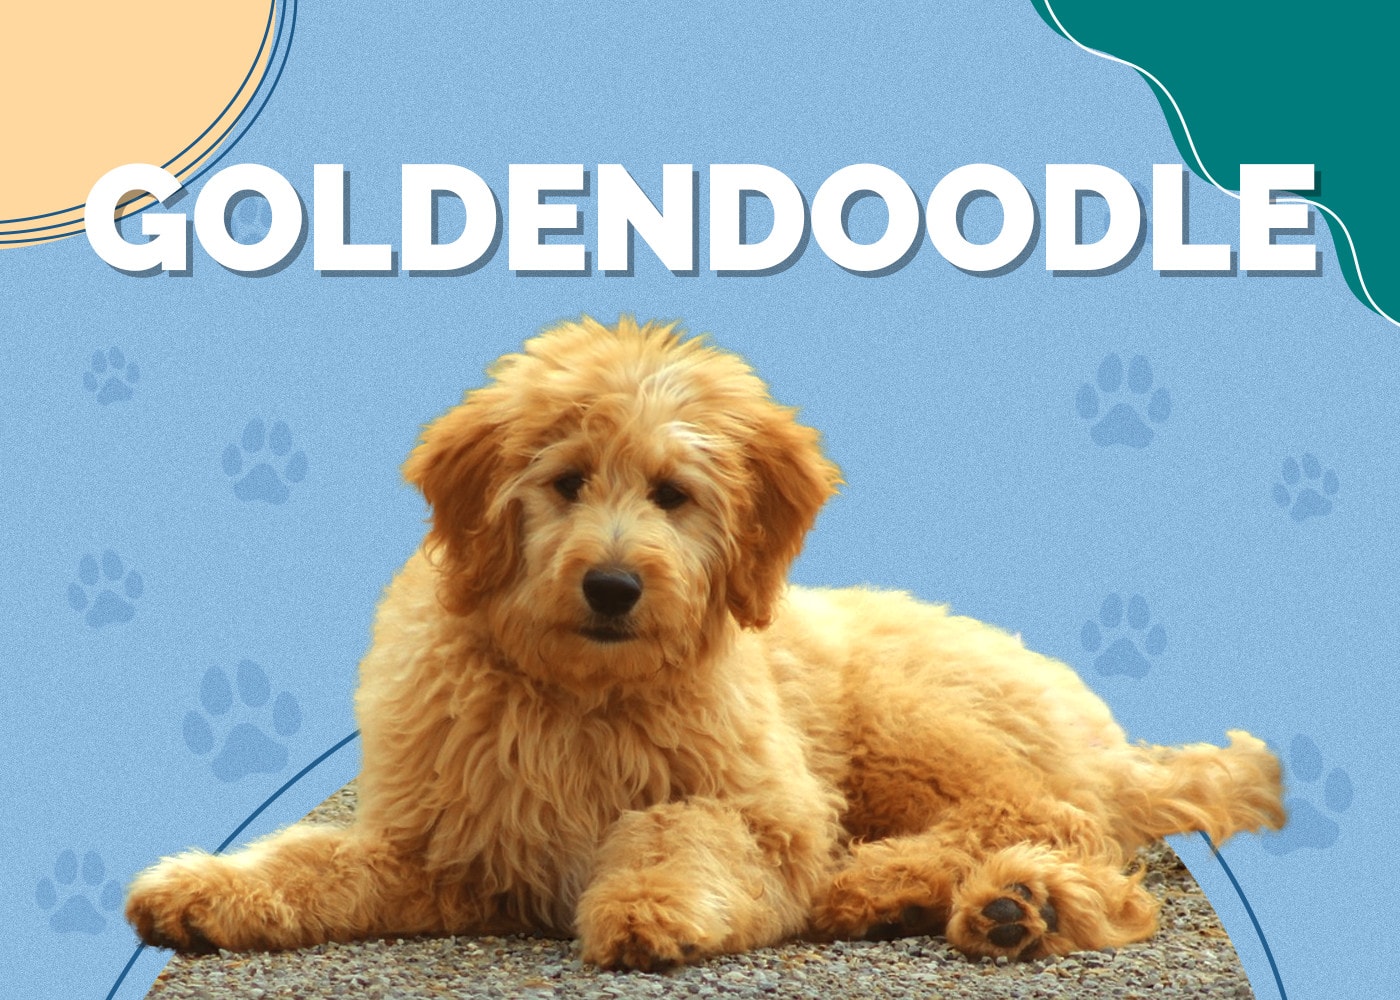 Goldendoodle (Golden Retriever & Poodle Mix)